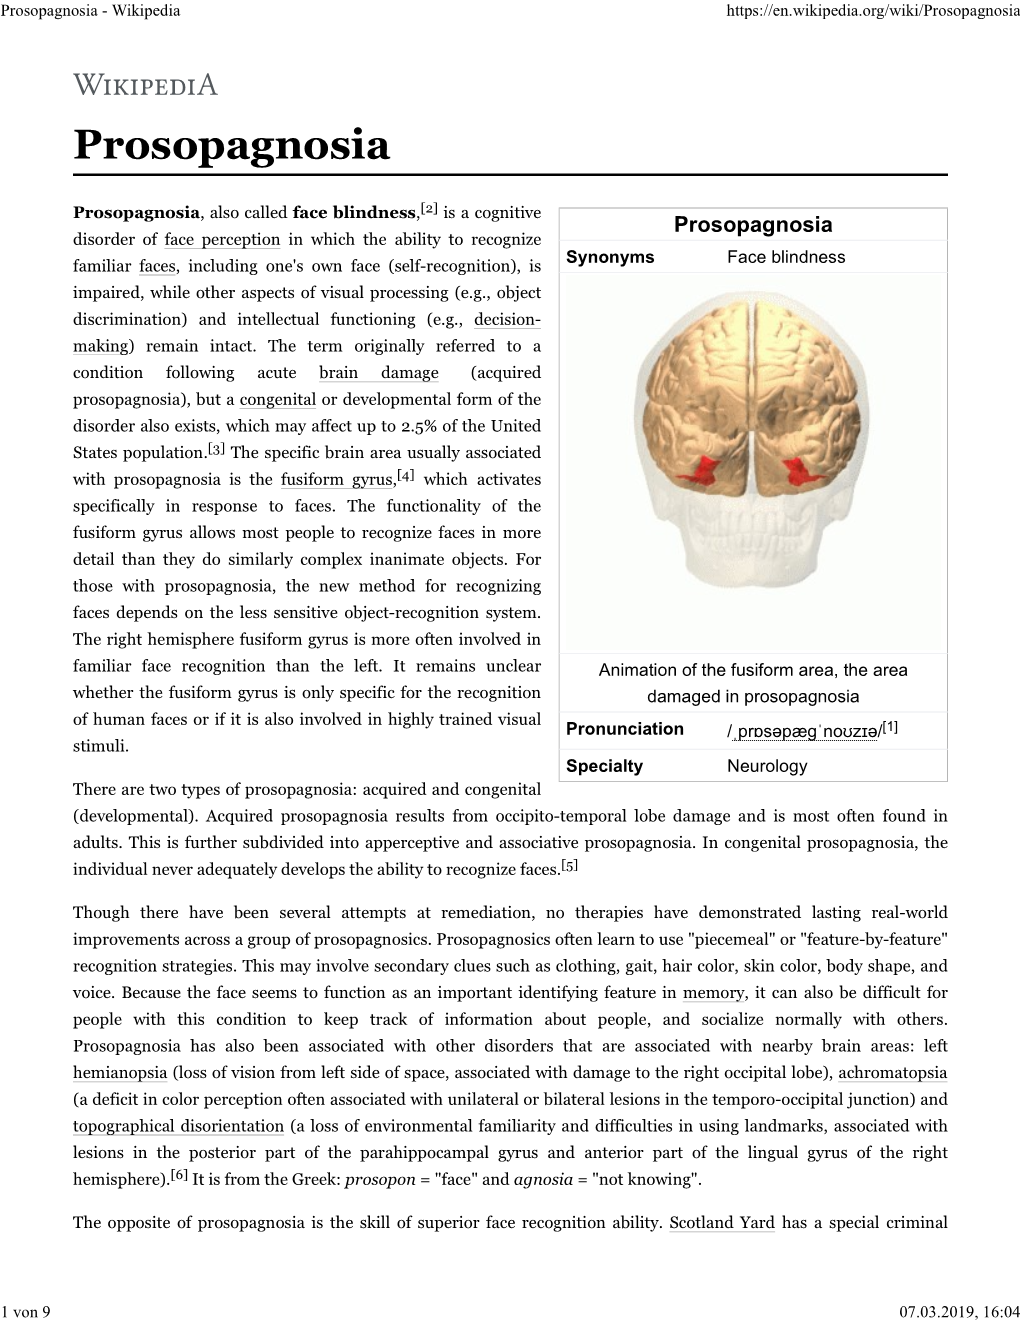 Prosopagnosia - Wikipedia